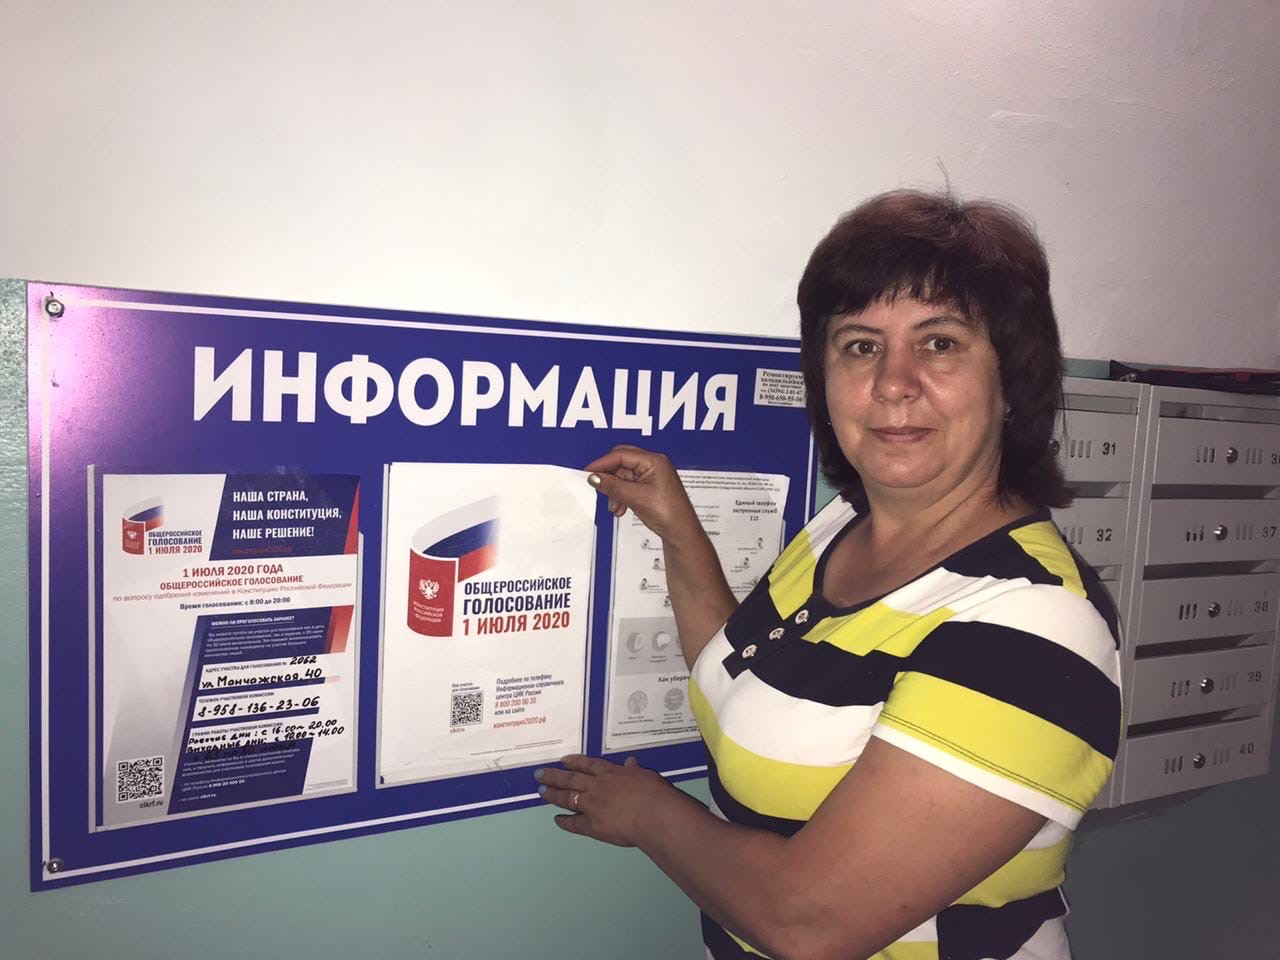 Можно проголосовать два раза. Где можно проголосовать. Как можно проголосовать. Участковая избирательная комиссия номер 1 Москва.